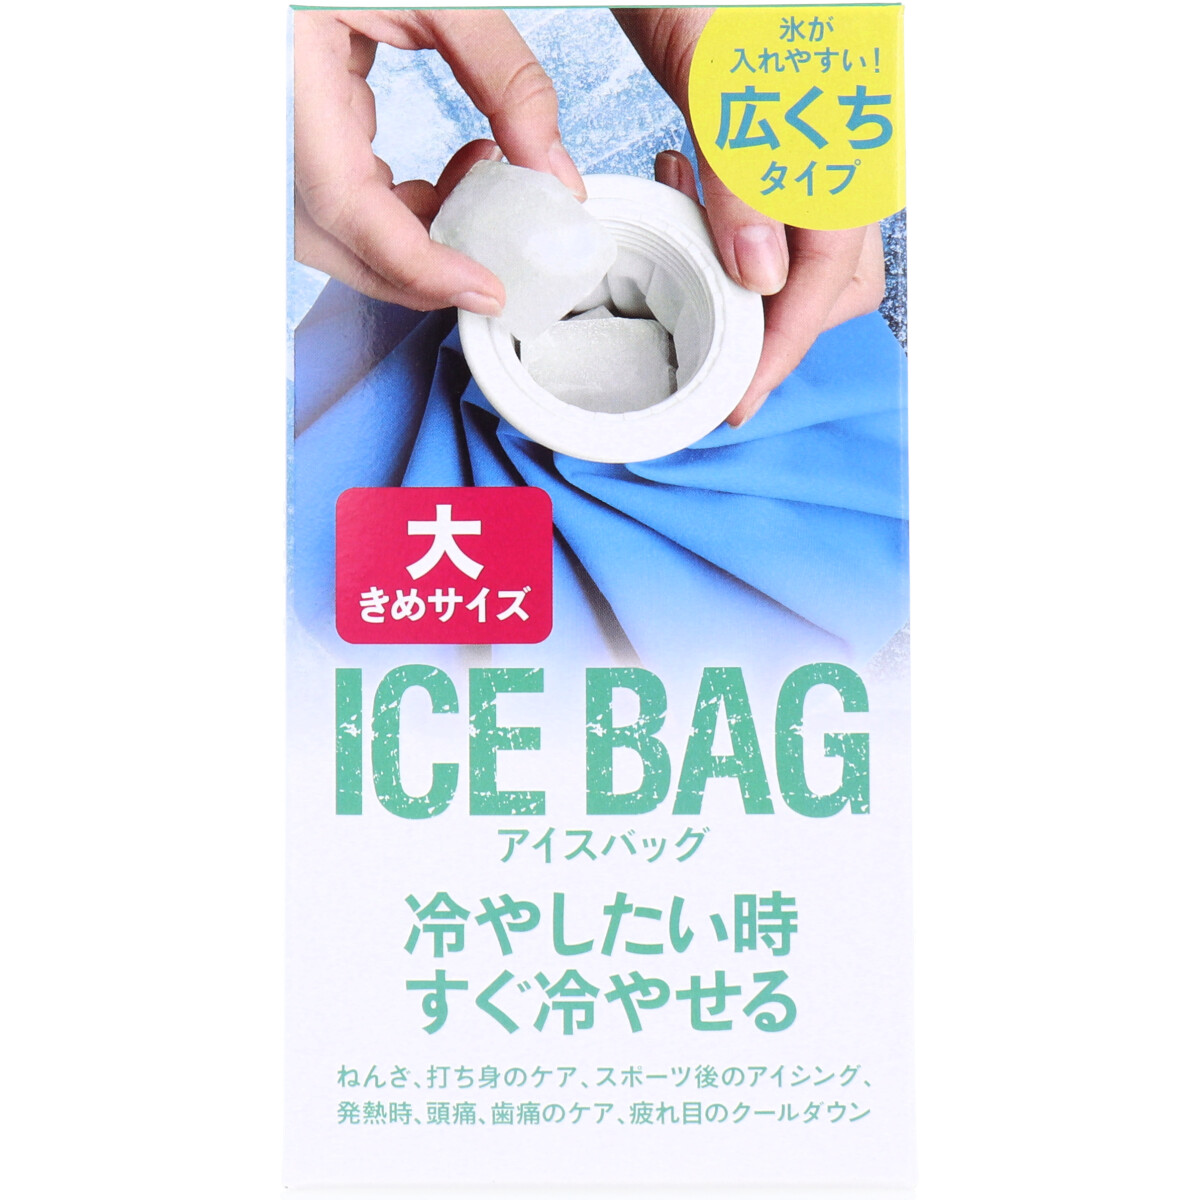 トプラン アイスバッグ ICE BAG 大きめサイズ 広くちタイプ 約1000cc TKY-75L